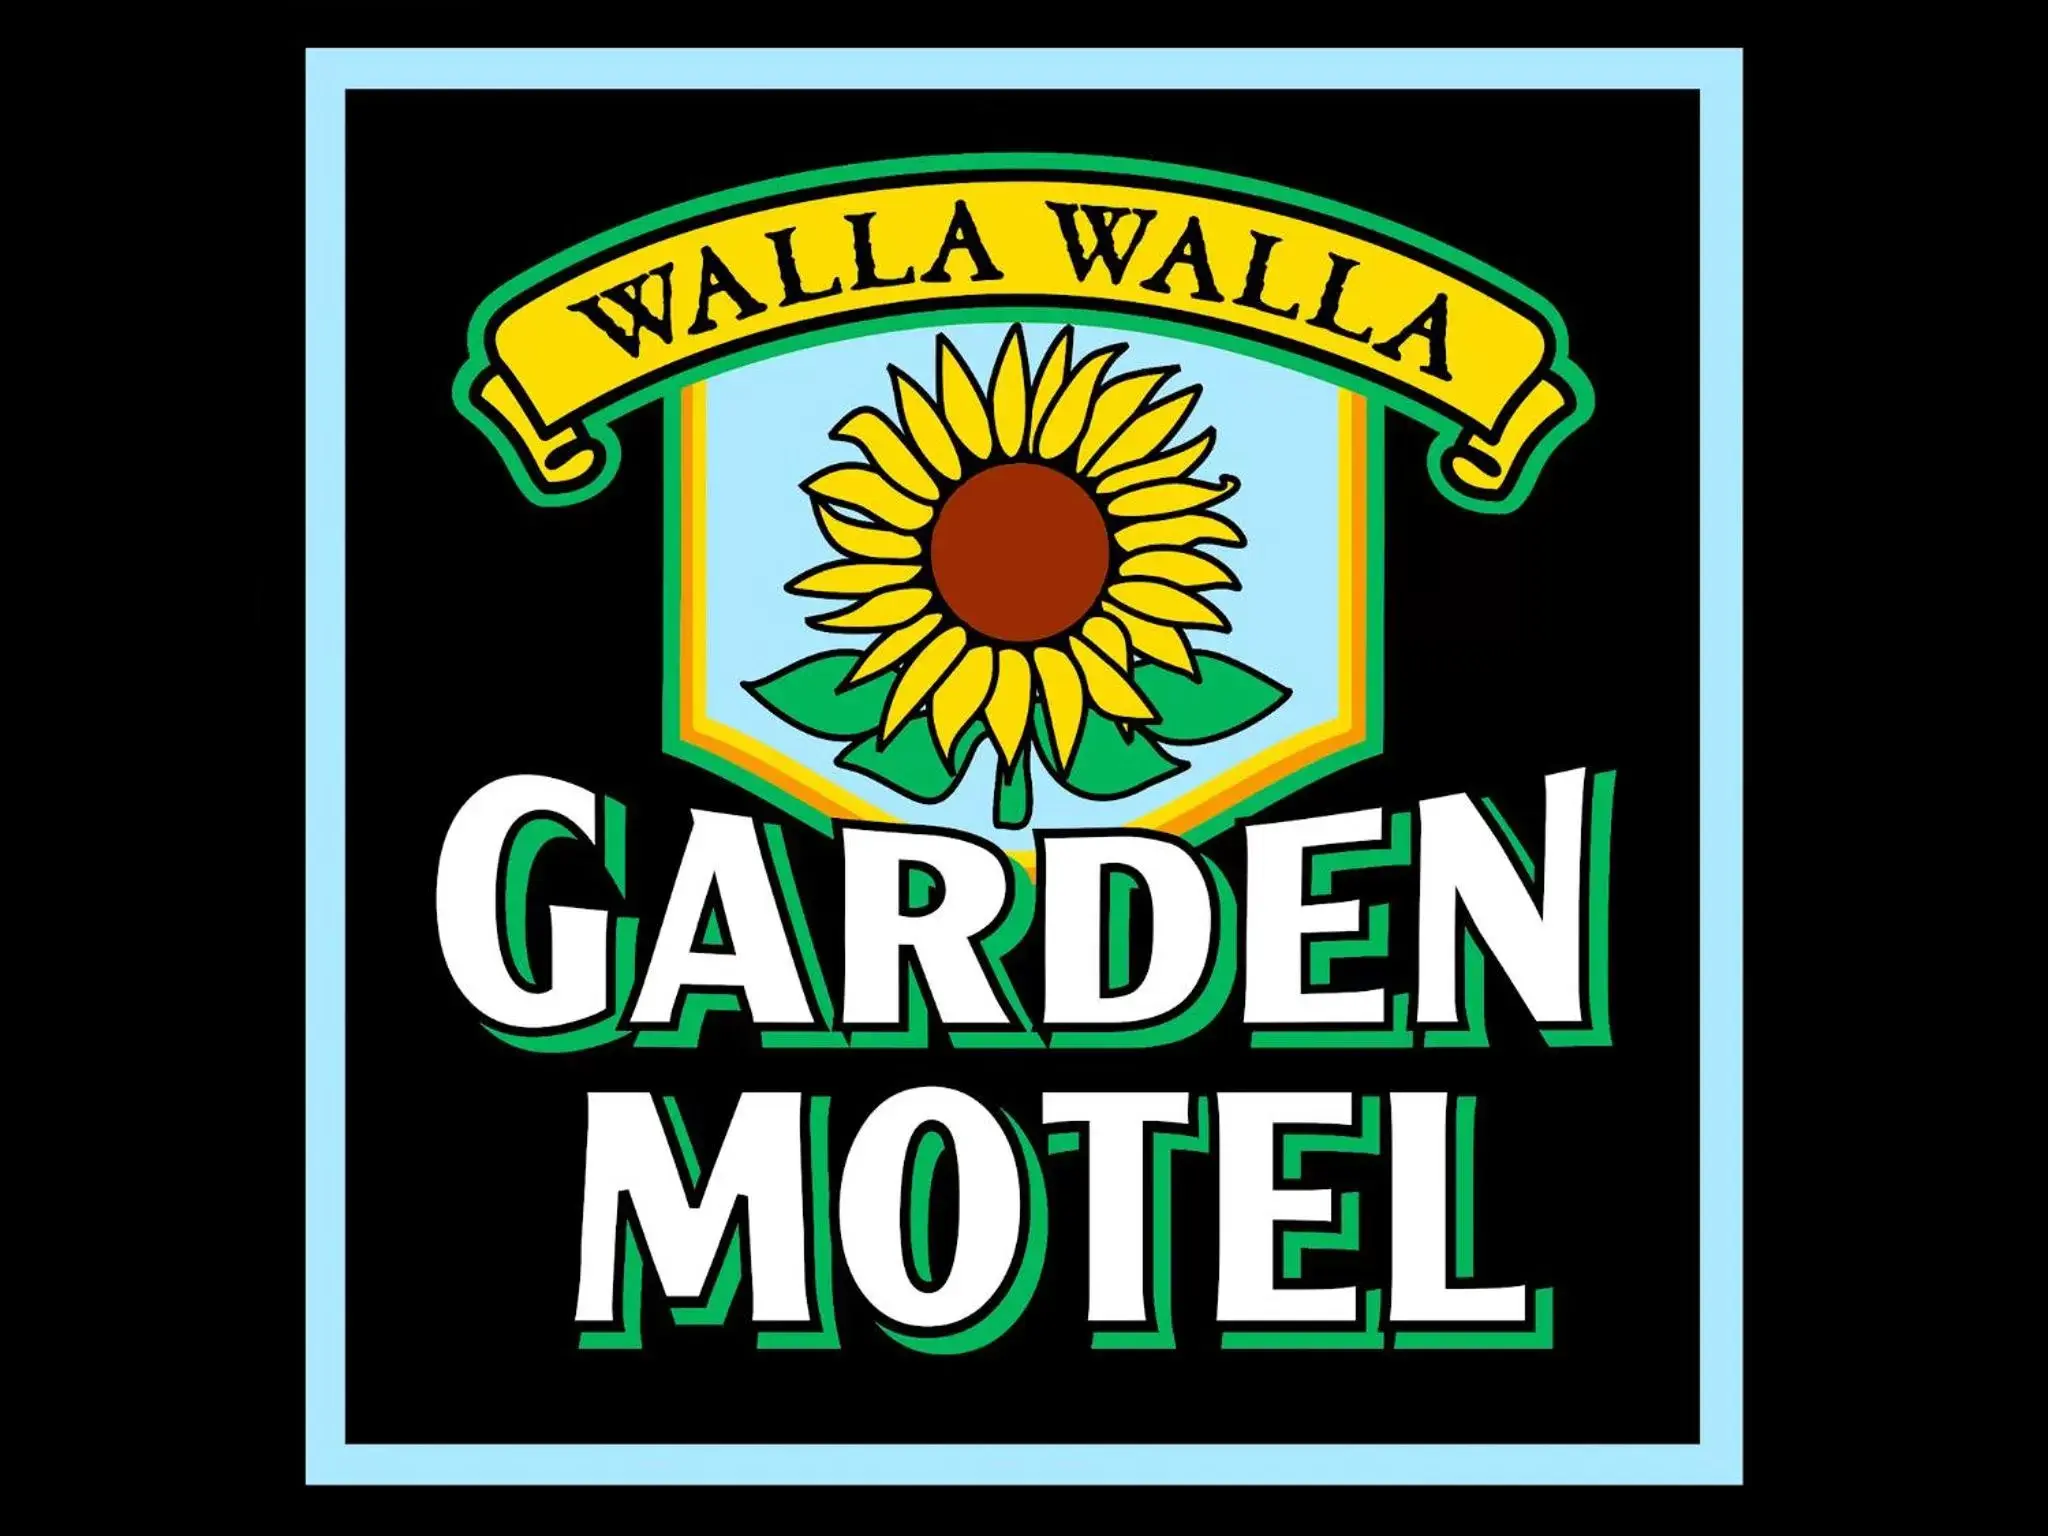 Logo/Certificate/Sign in Walla Walla Garden Motel